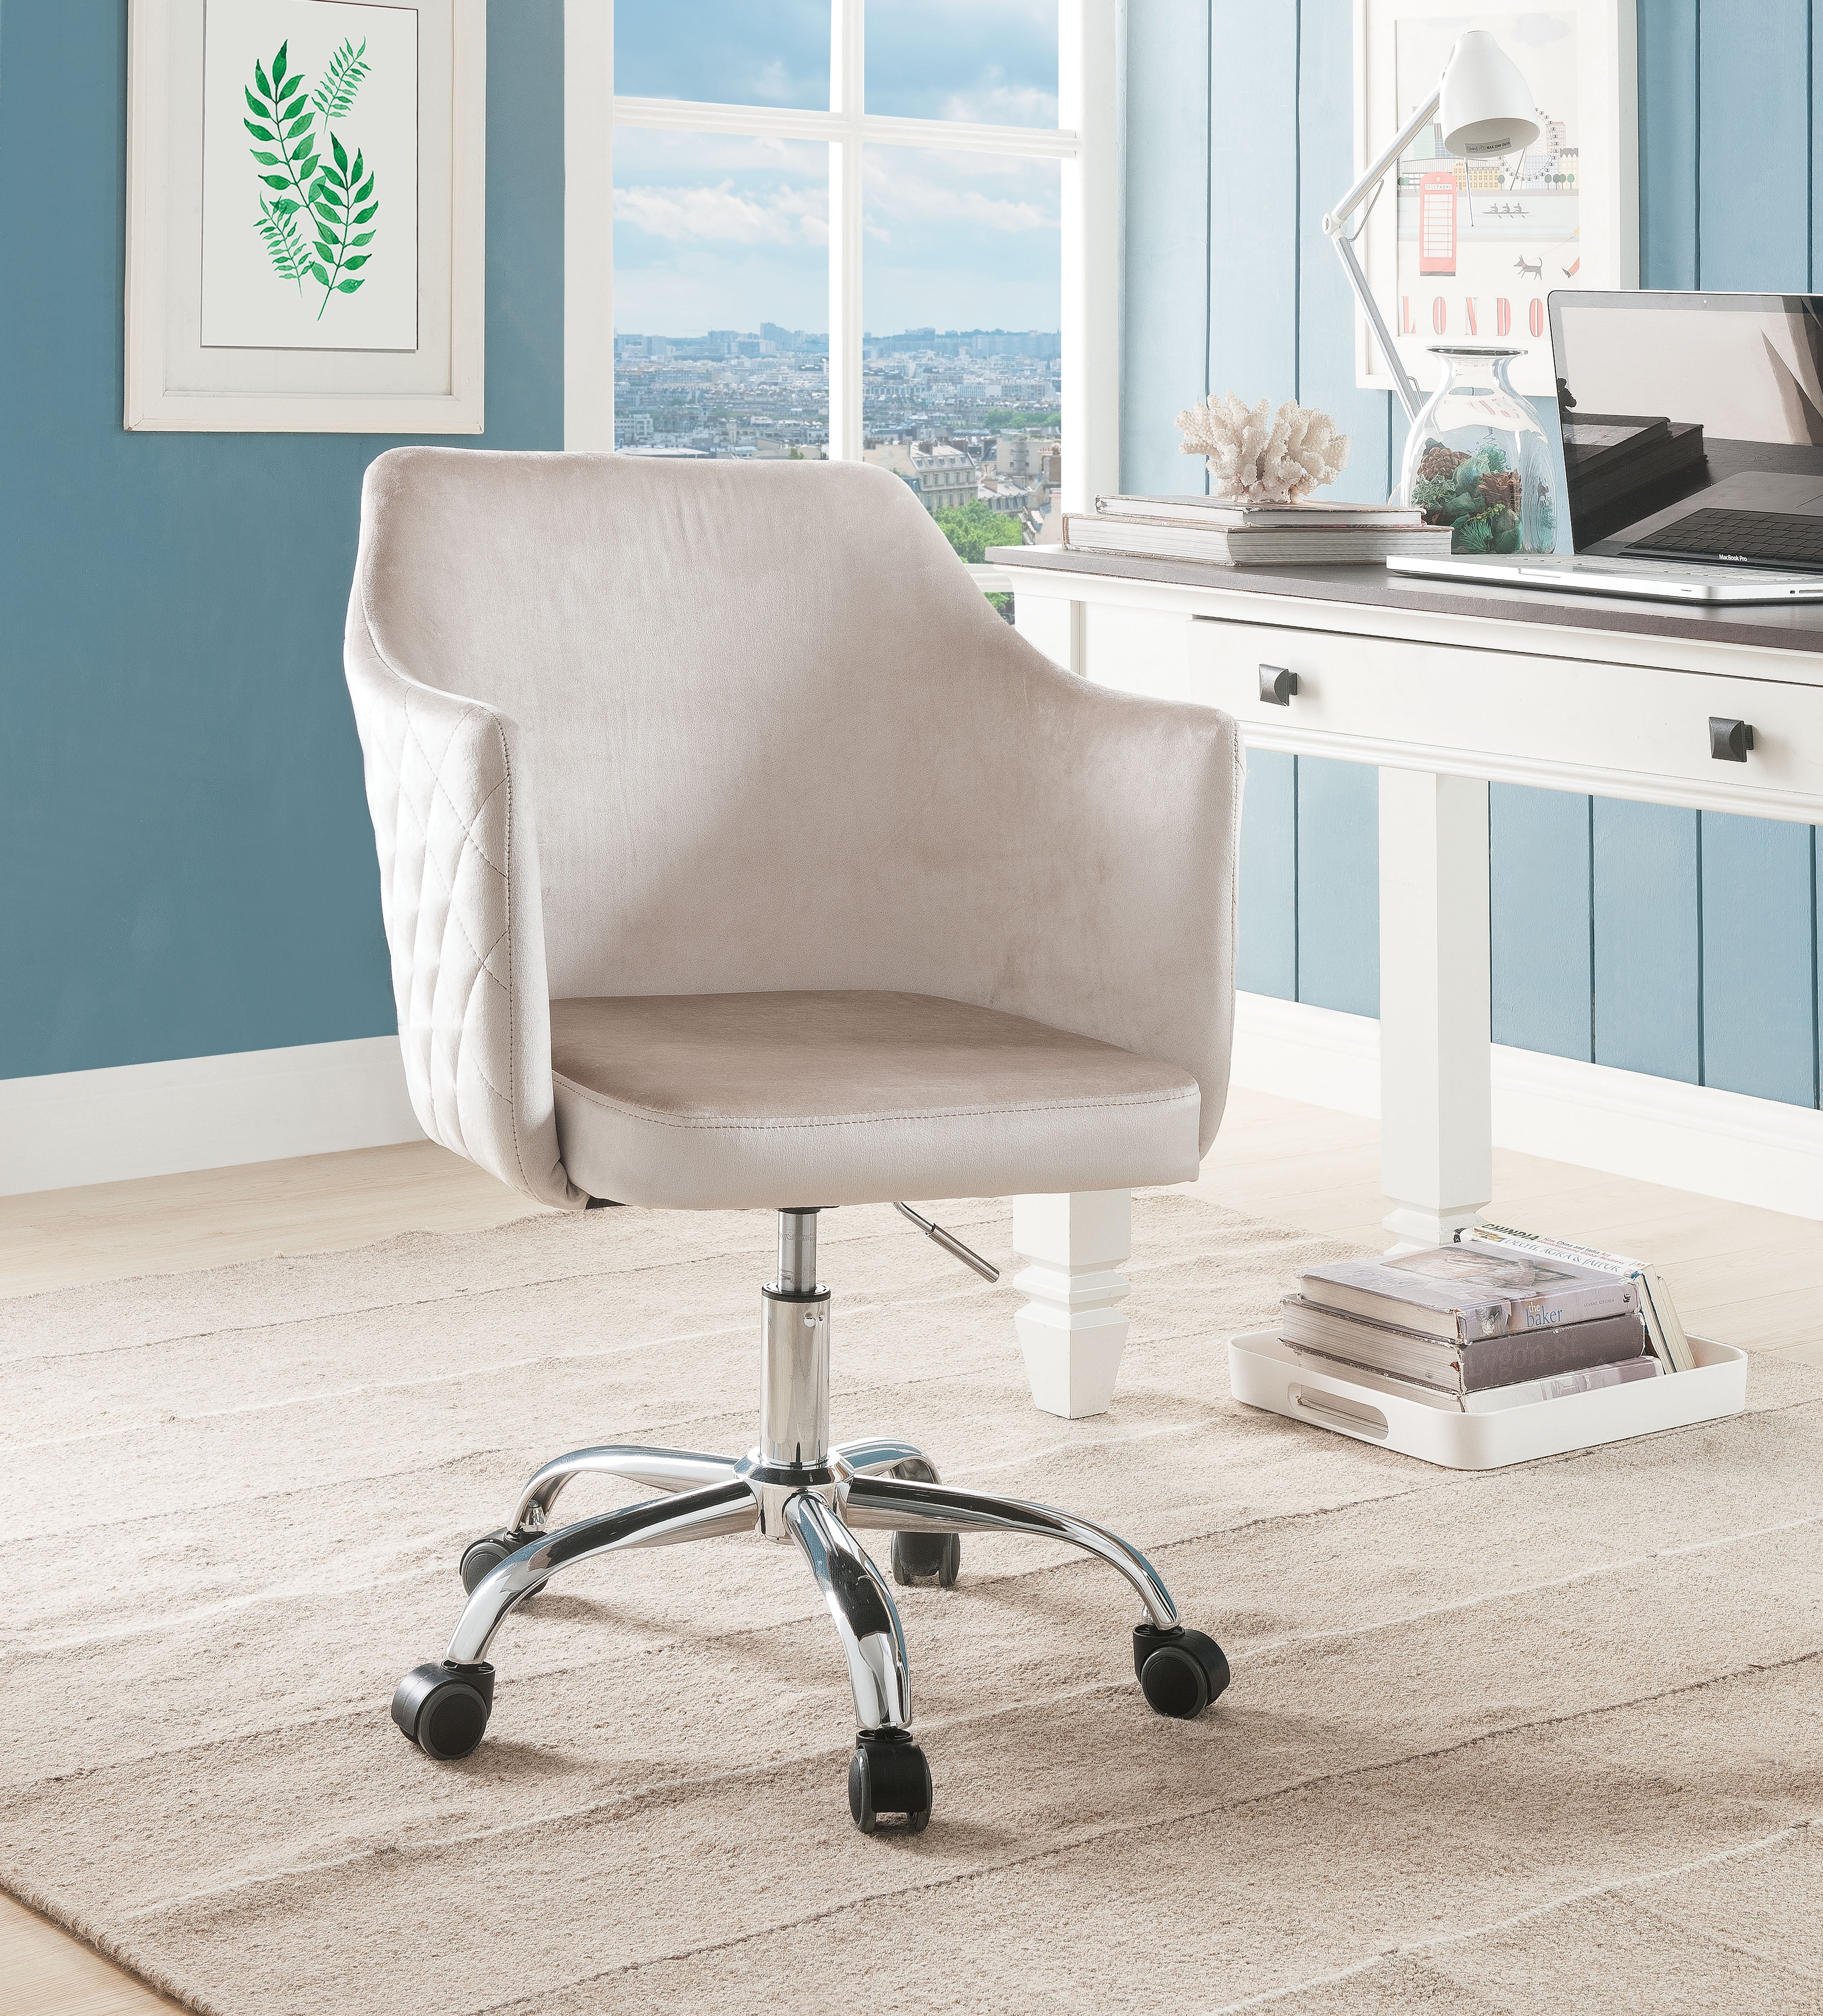 Velvet Upholstered Swivel Office Chair With Adjustable ...